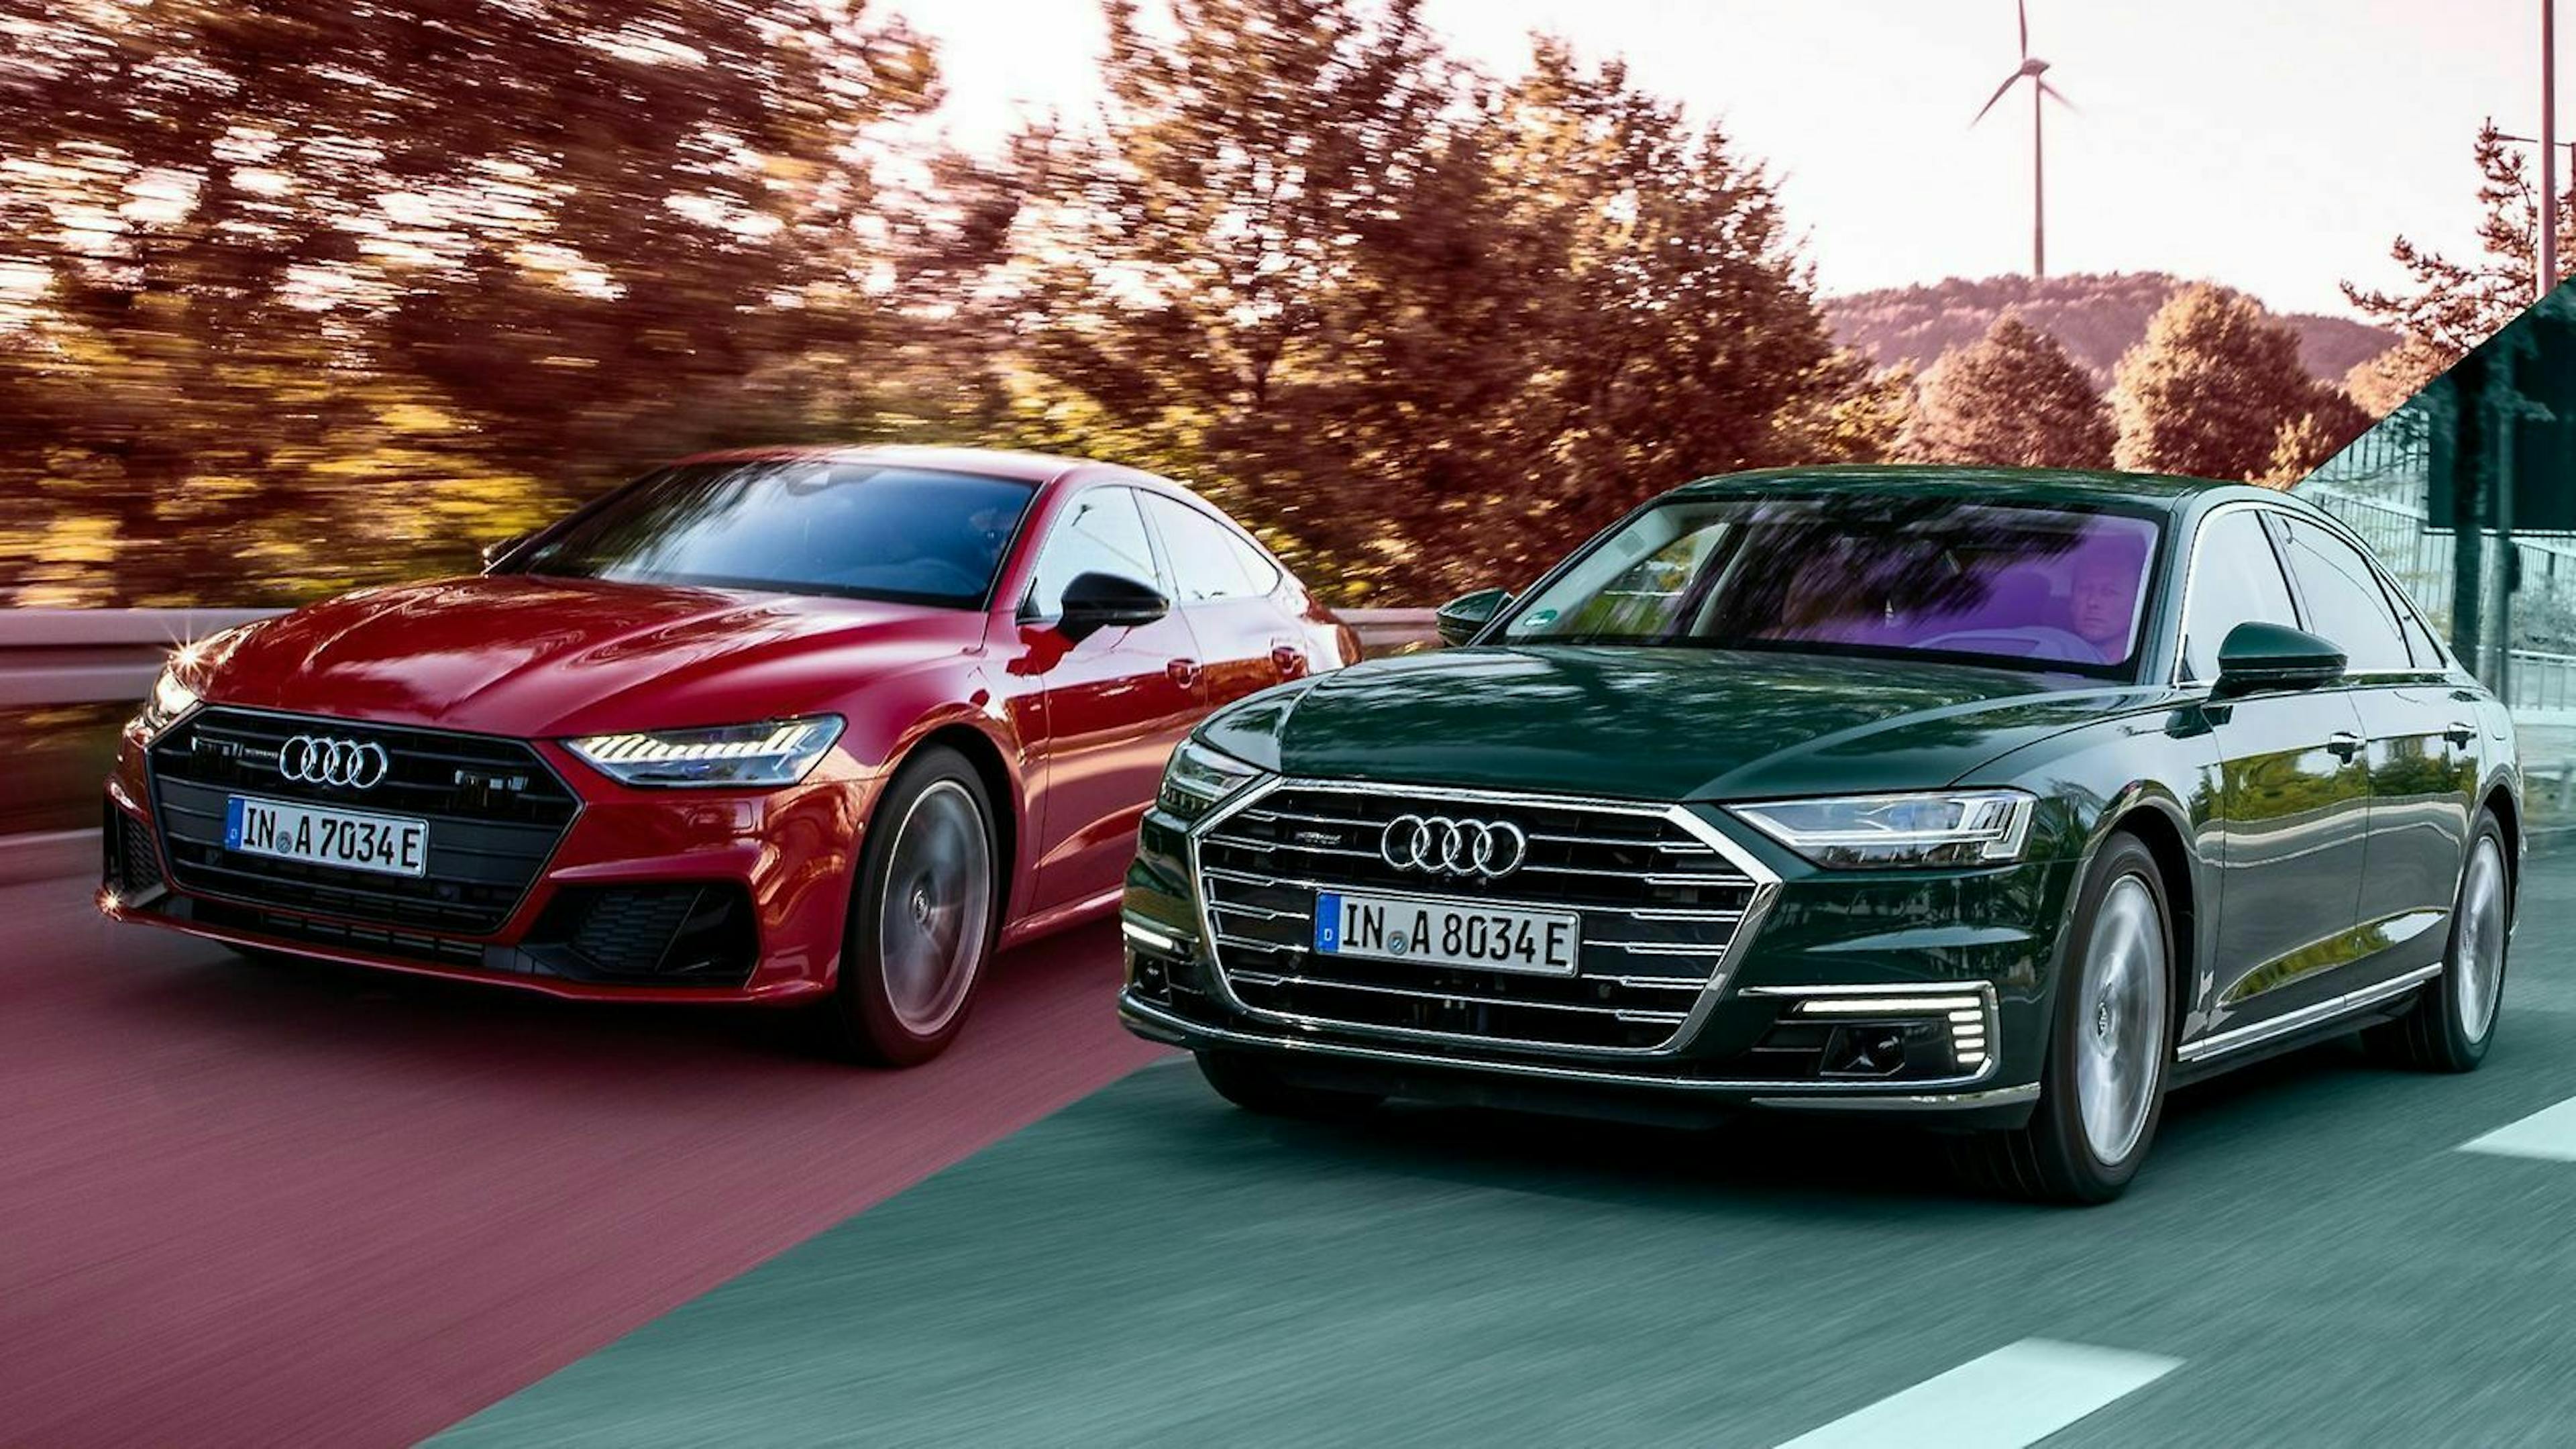 Audi elektrifiziert den A8 und den A7 Sportback. Wir haben die beiden Oberklasse-Limousinen verglichen